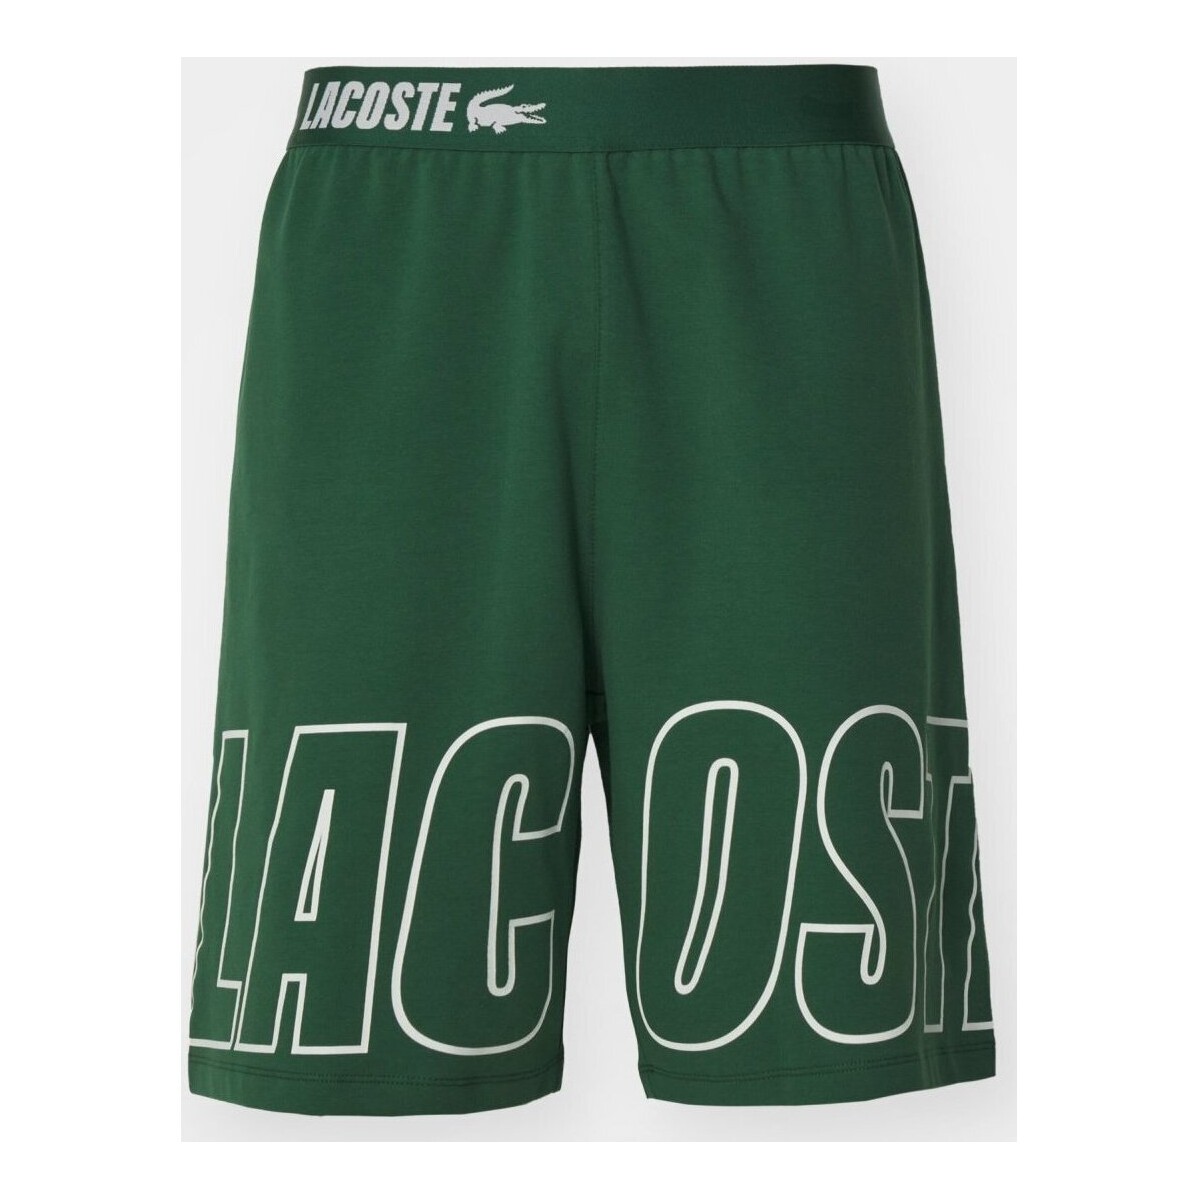 textil Hombre Pantalones cortos Lacoste GH8393 - Hombres Verde